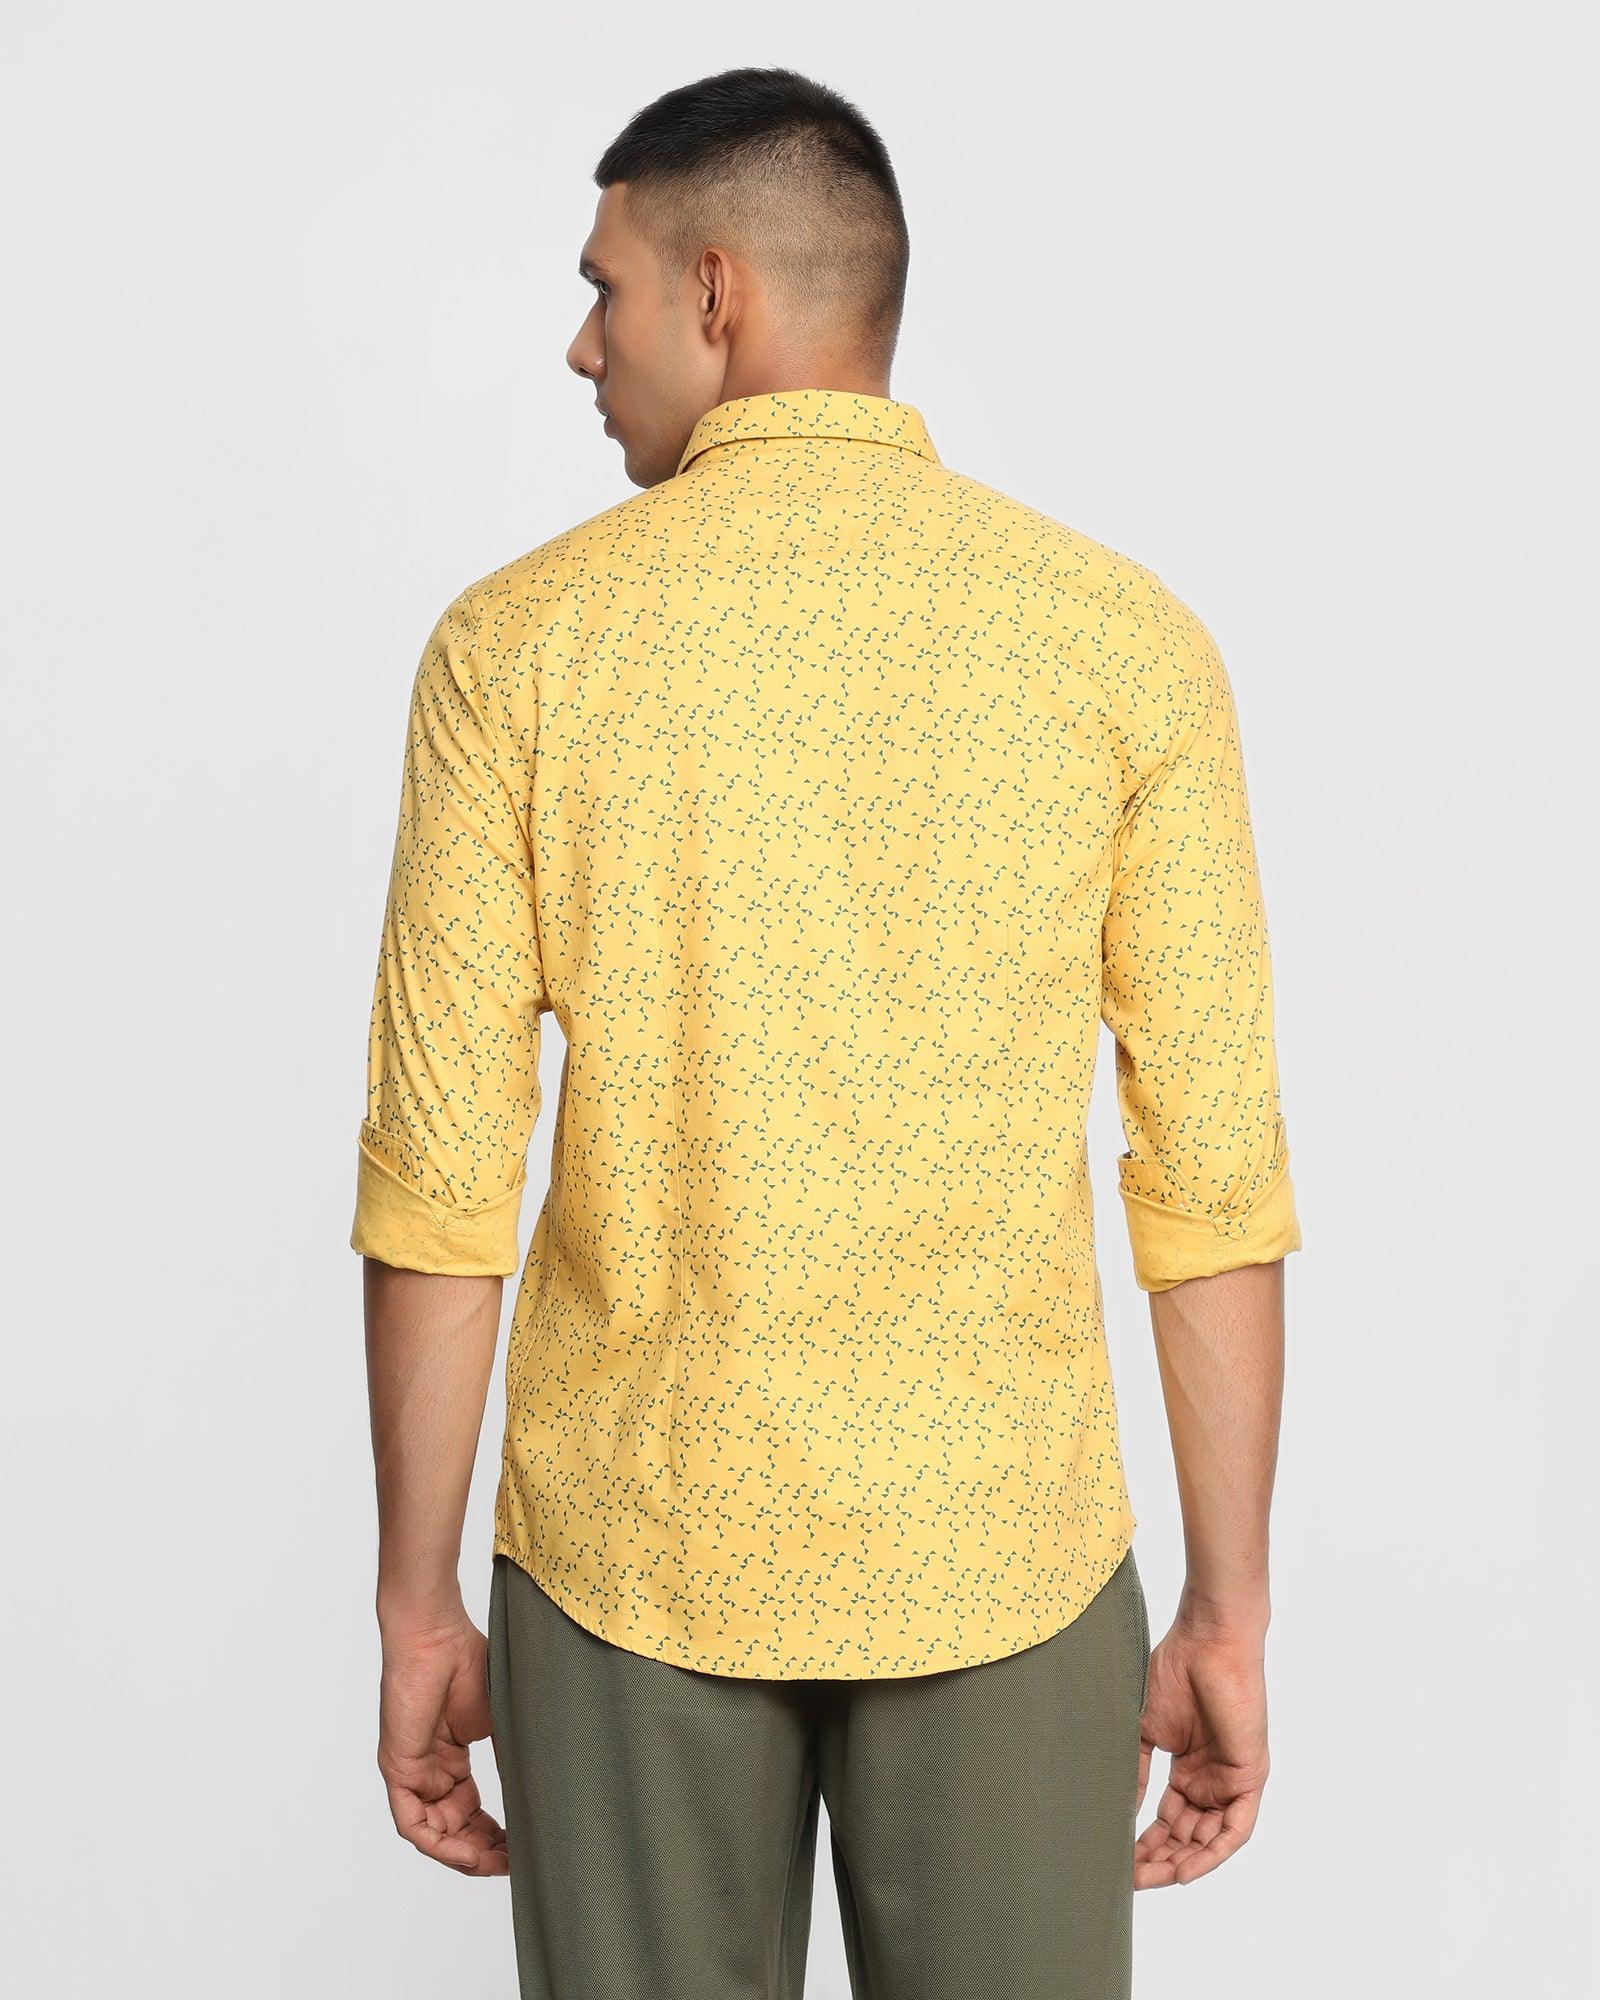 Casual Yellow Printed Shirt - Pebble